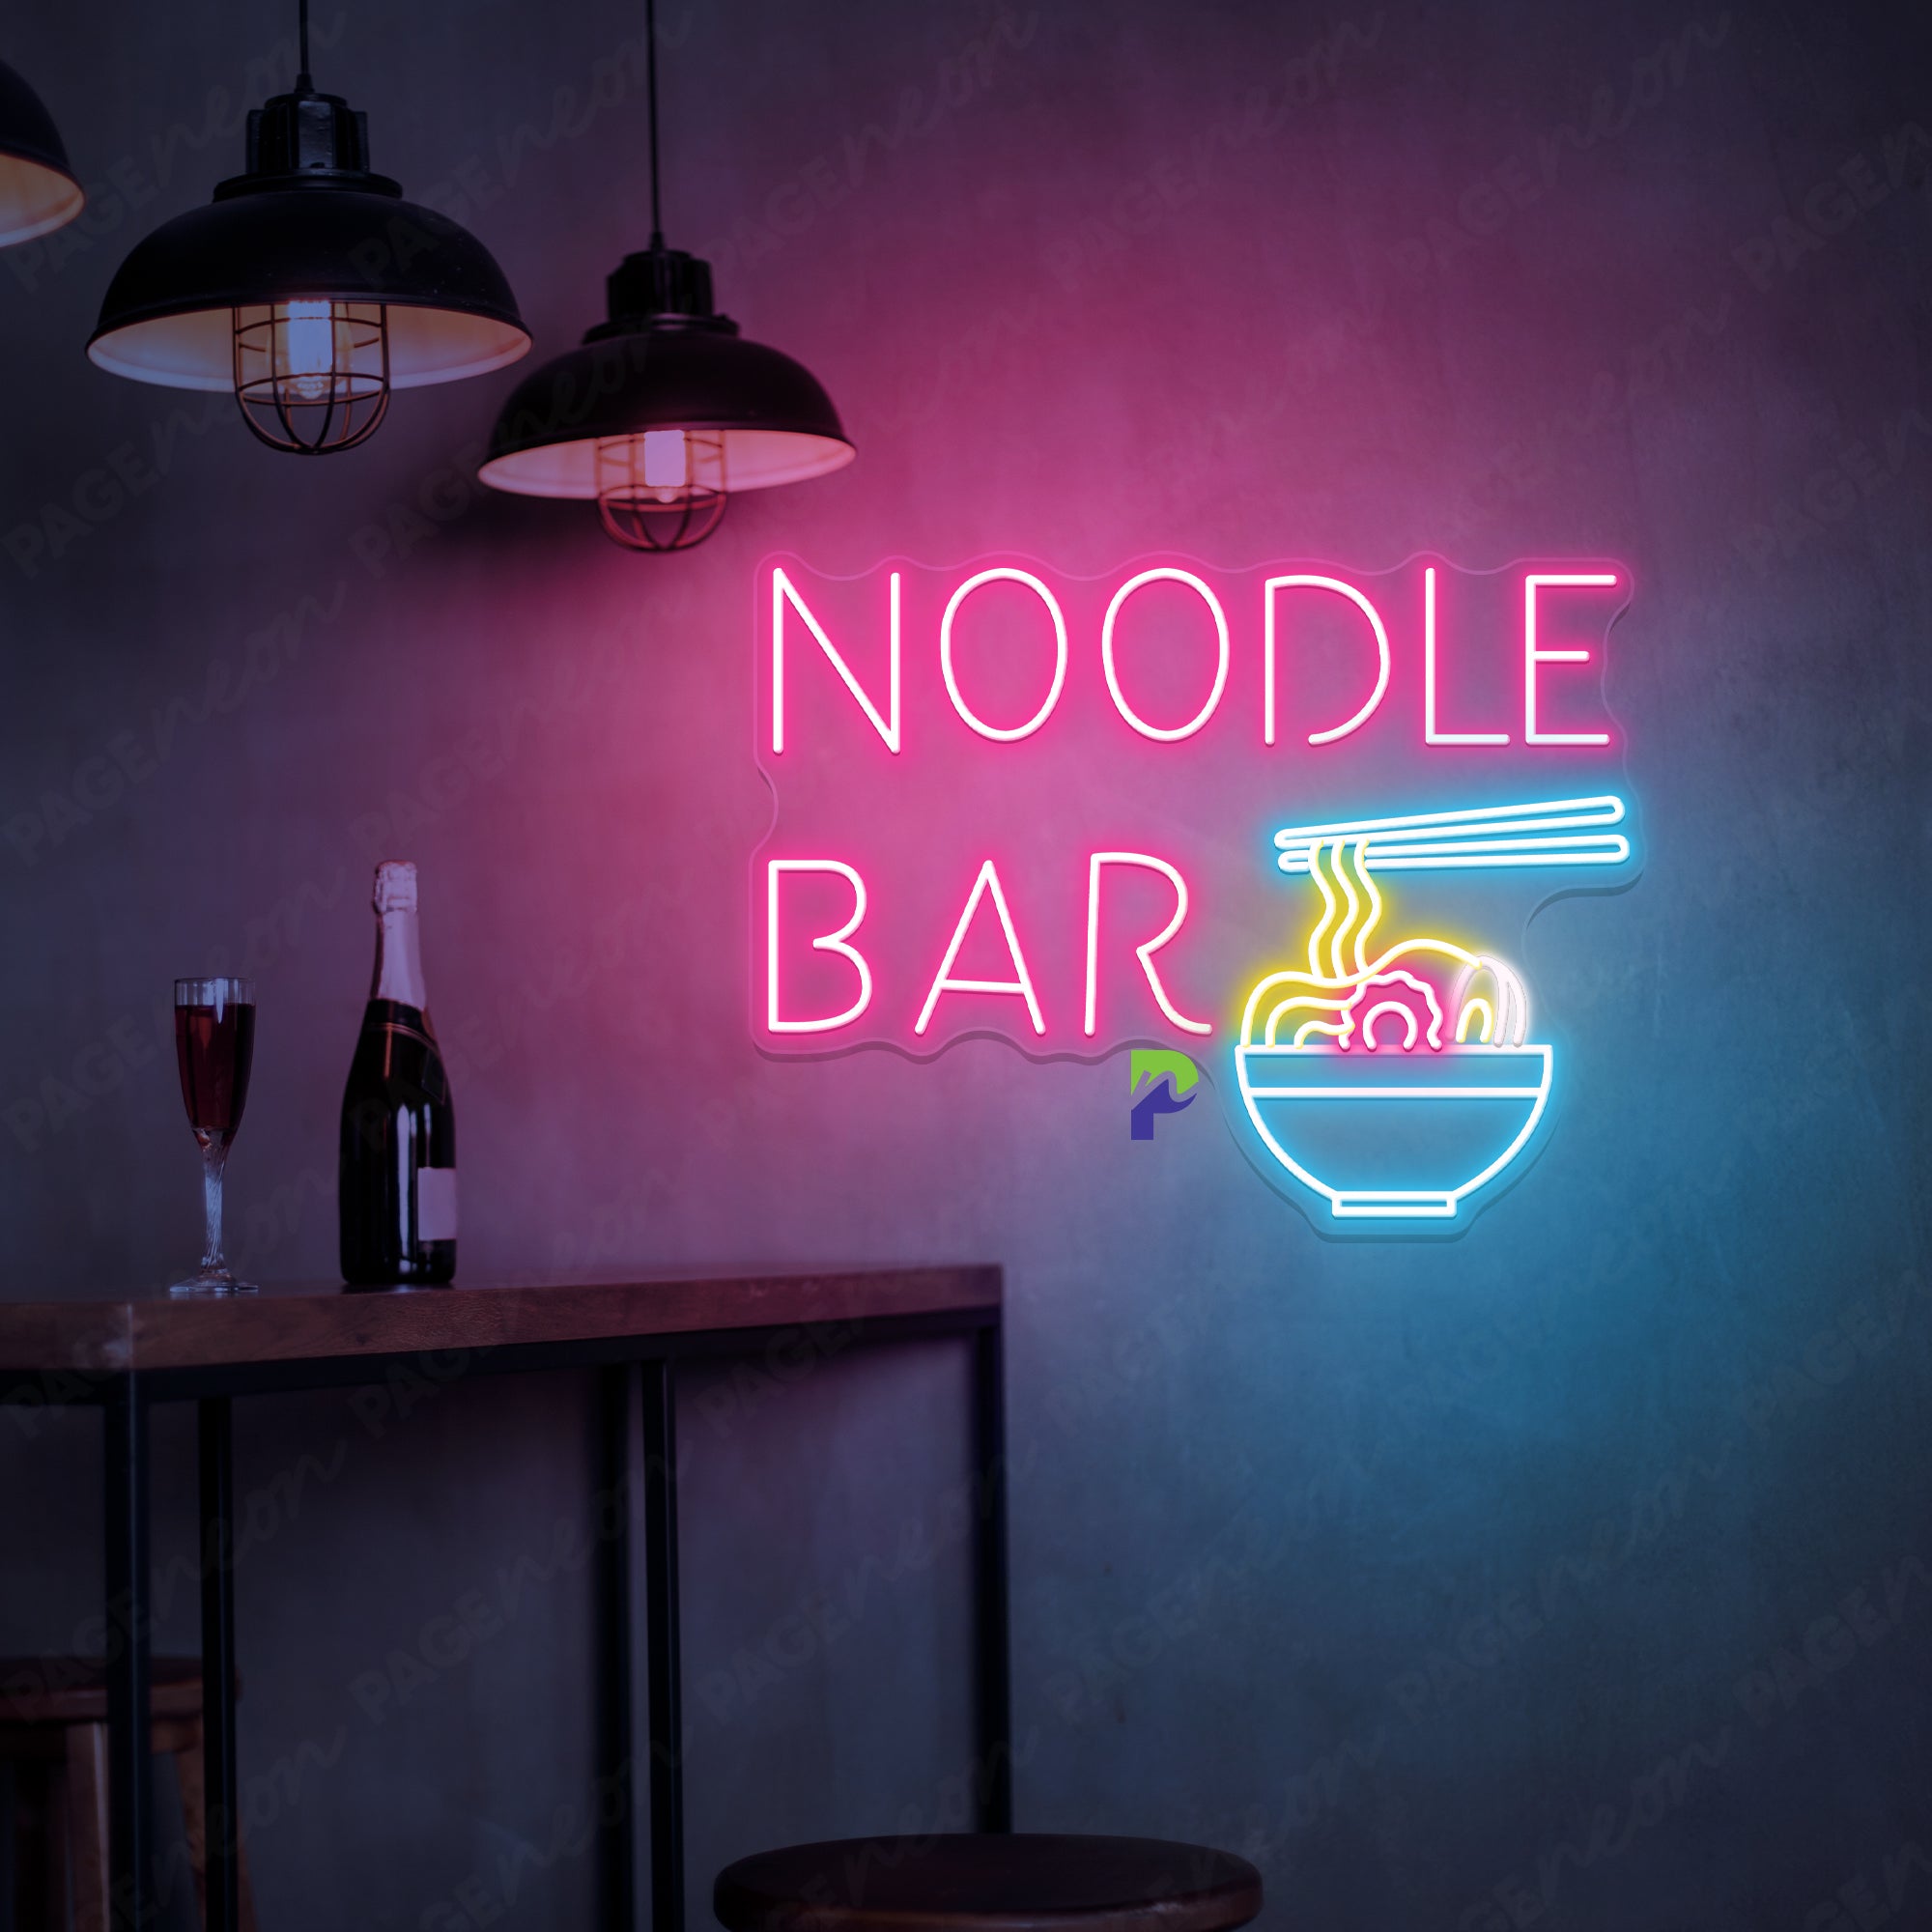 Neon Noodle Bar Sign Special Led Light For Restaurant